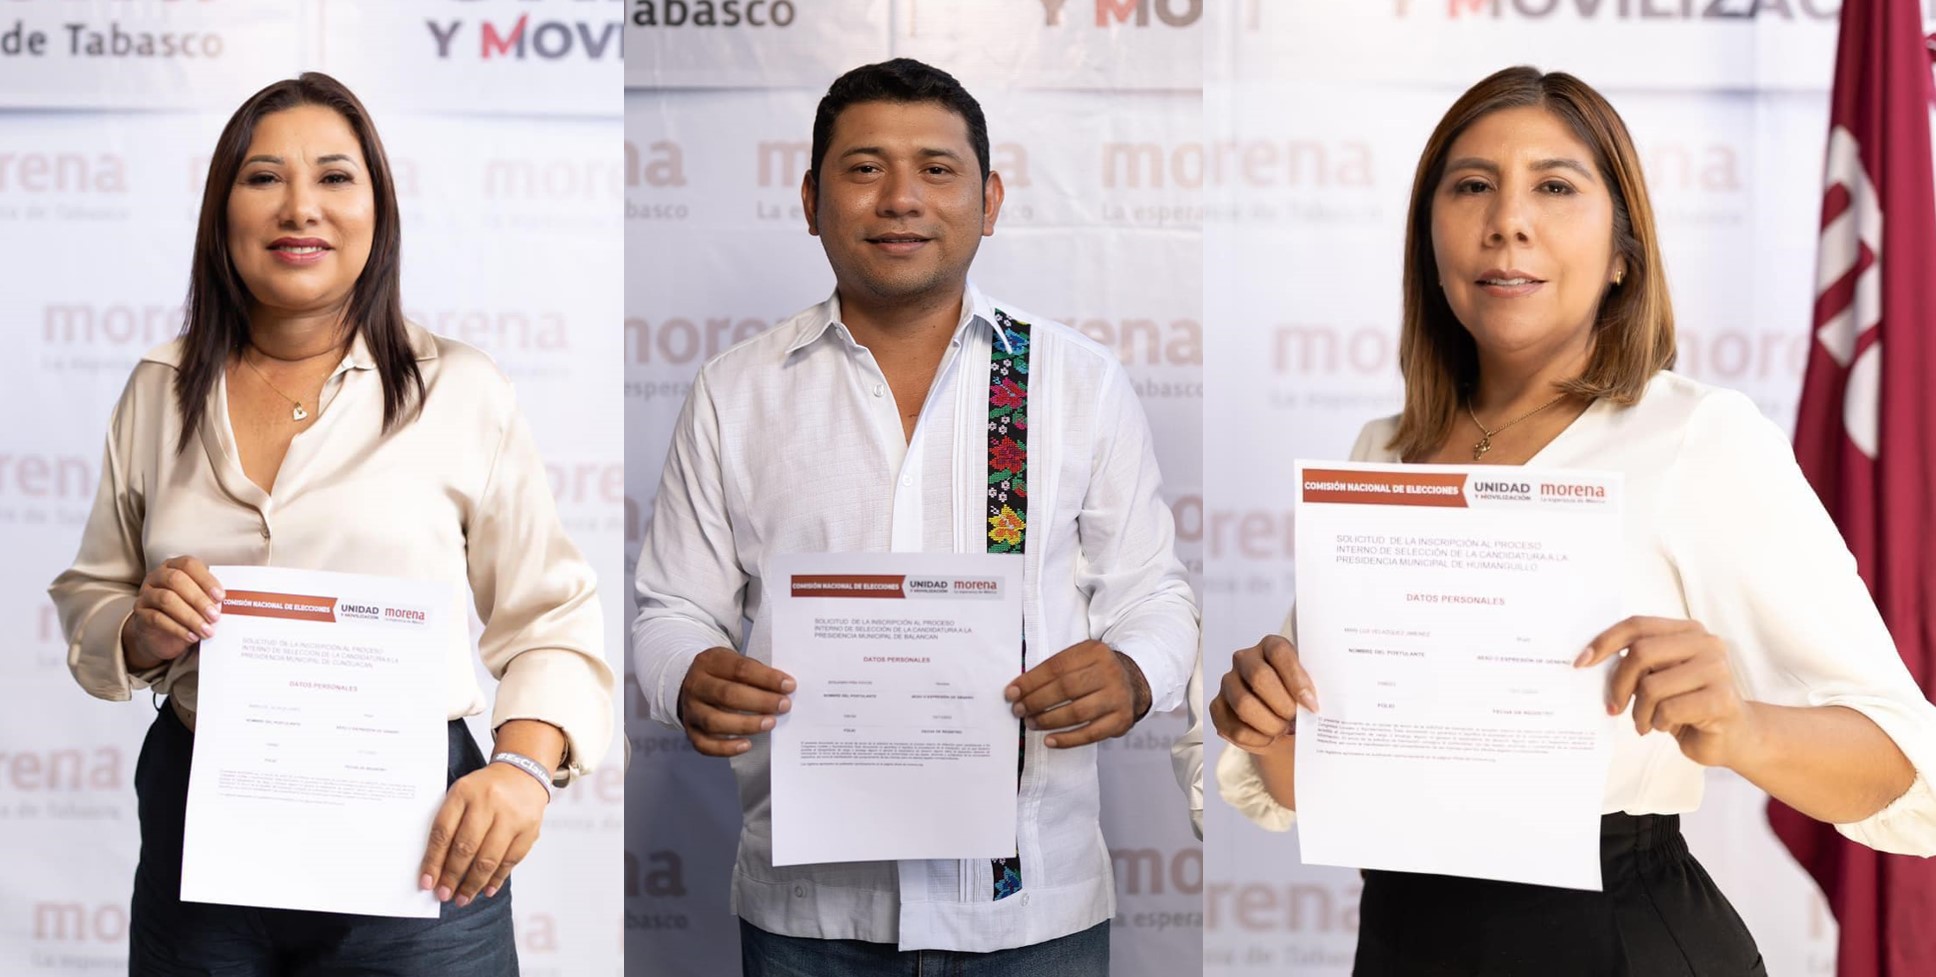 Se registran aspirantes a diputados locales y presidentes municipales por Morena en Tabasco